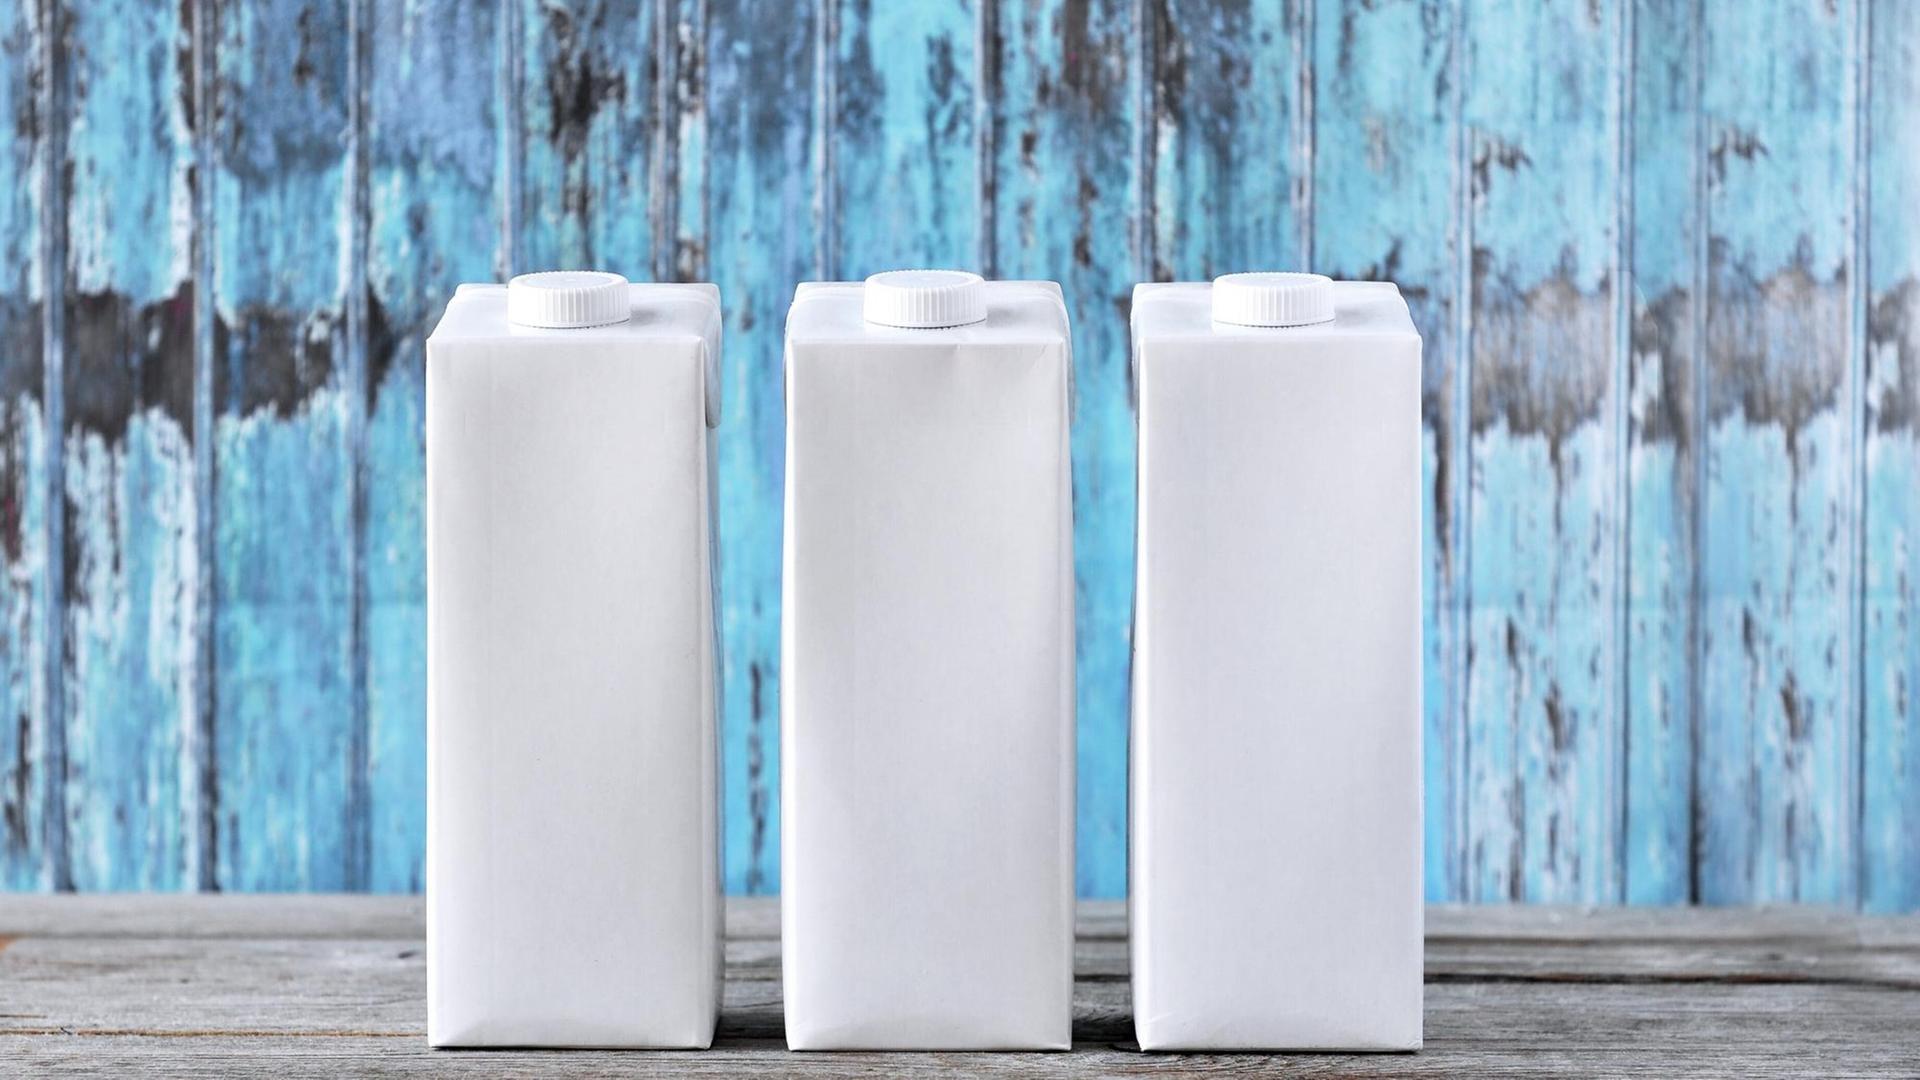 Drei weiße, unbedruckte Tetra Paks stehen auf einem Tisch vor blauem Hintergrund